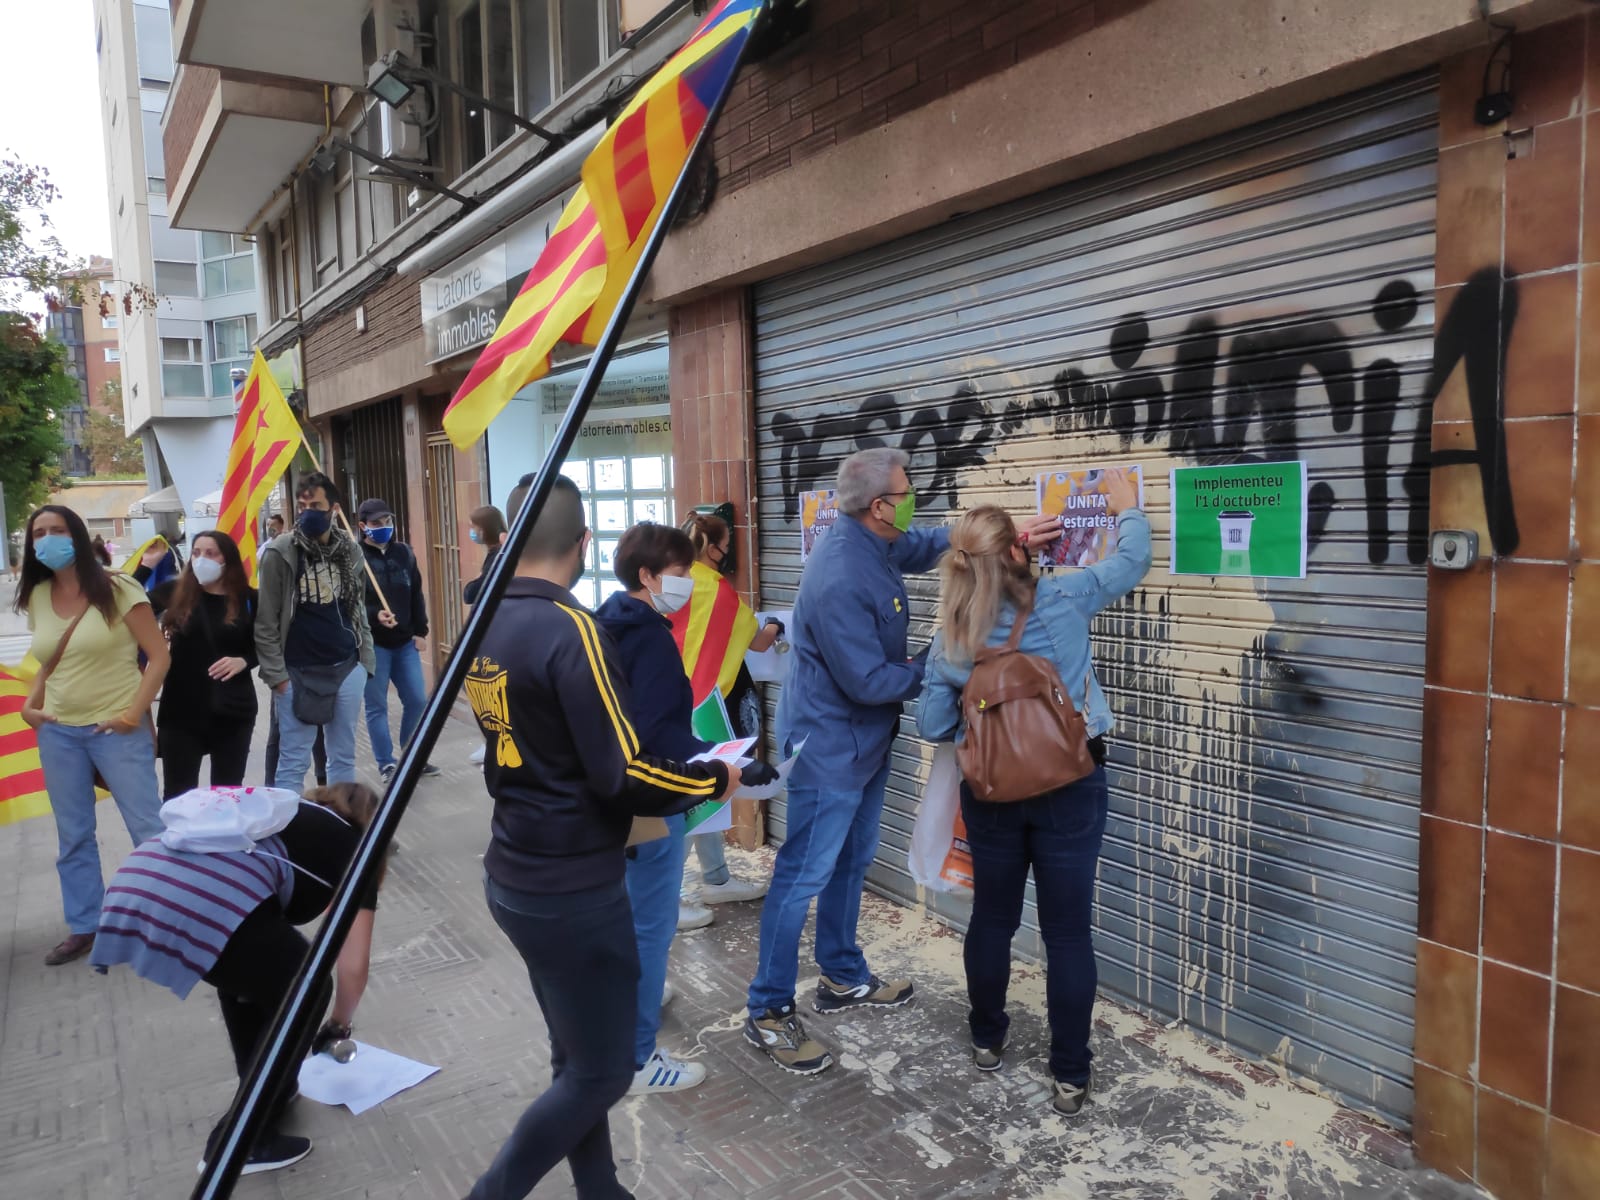 Mobilització aquesta tarda a Sabadell | Pau Duran